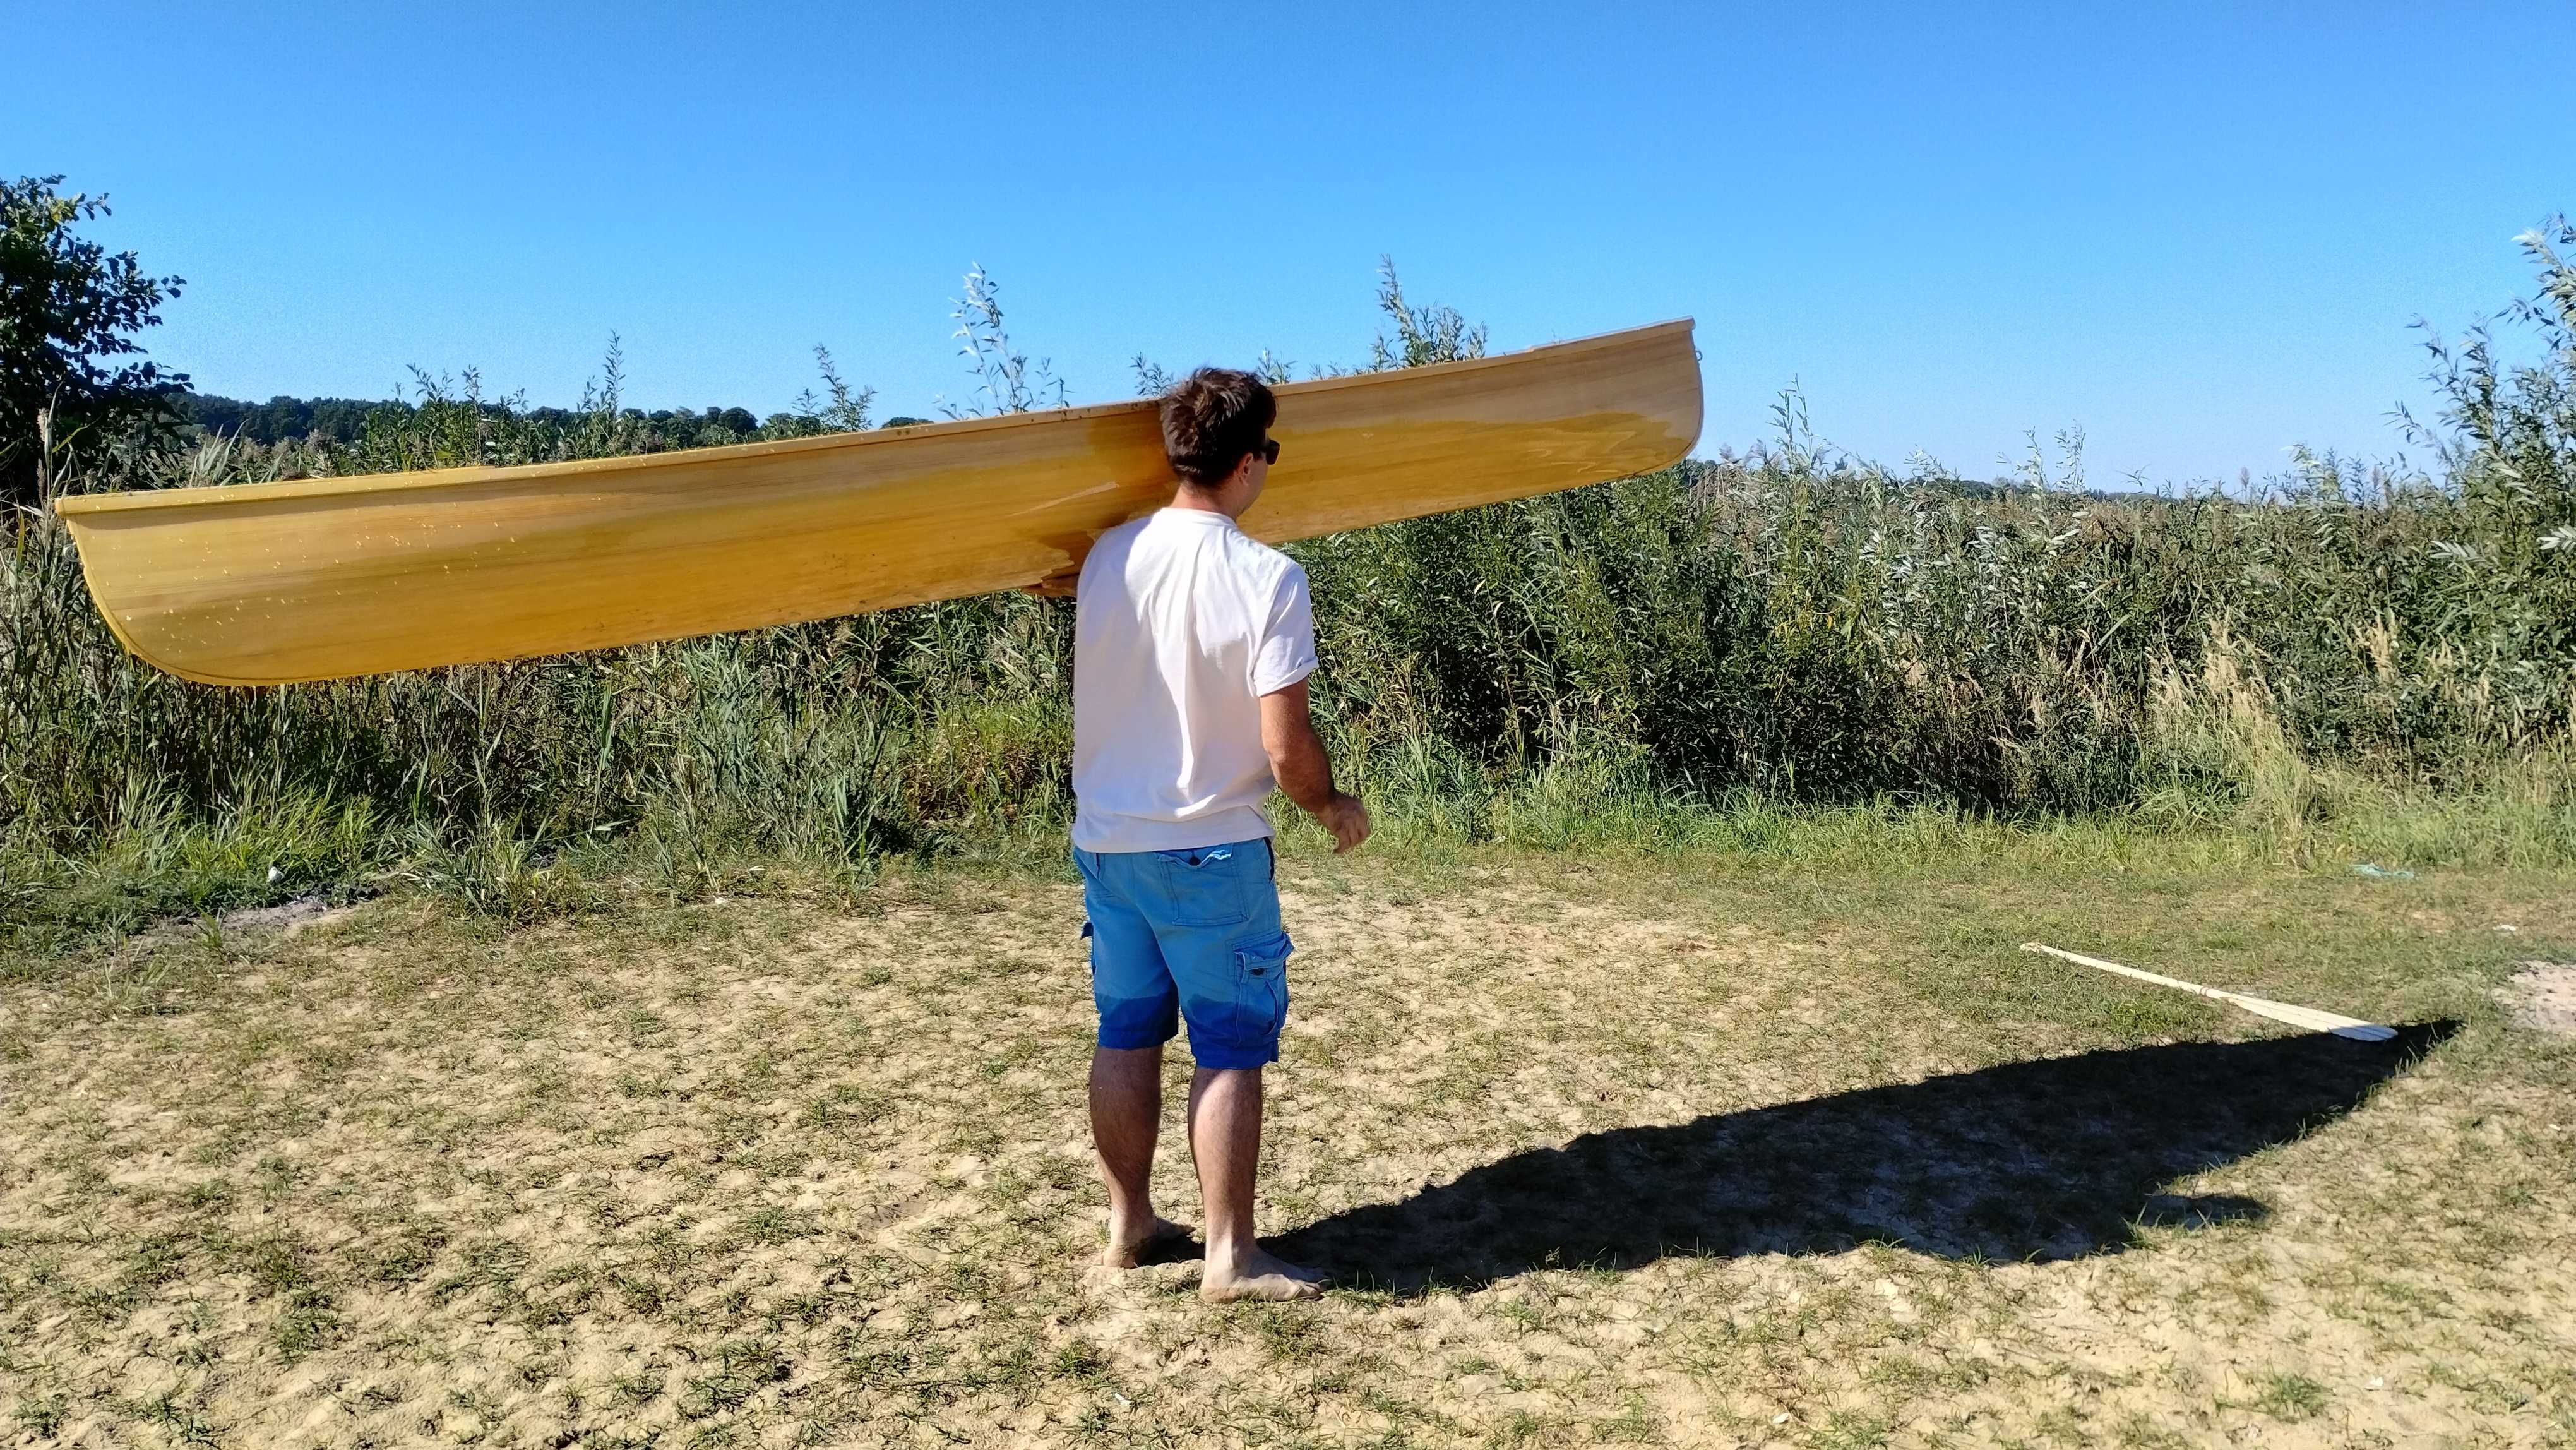 Canoe drewniane  jednoosobowe | Kajak Kanu łódź drewniana kanadyjka |